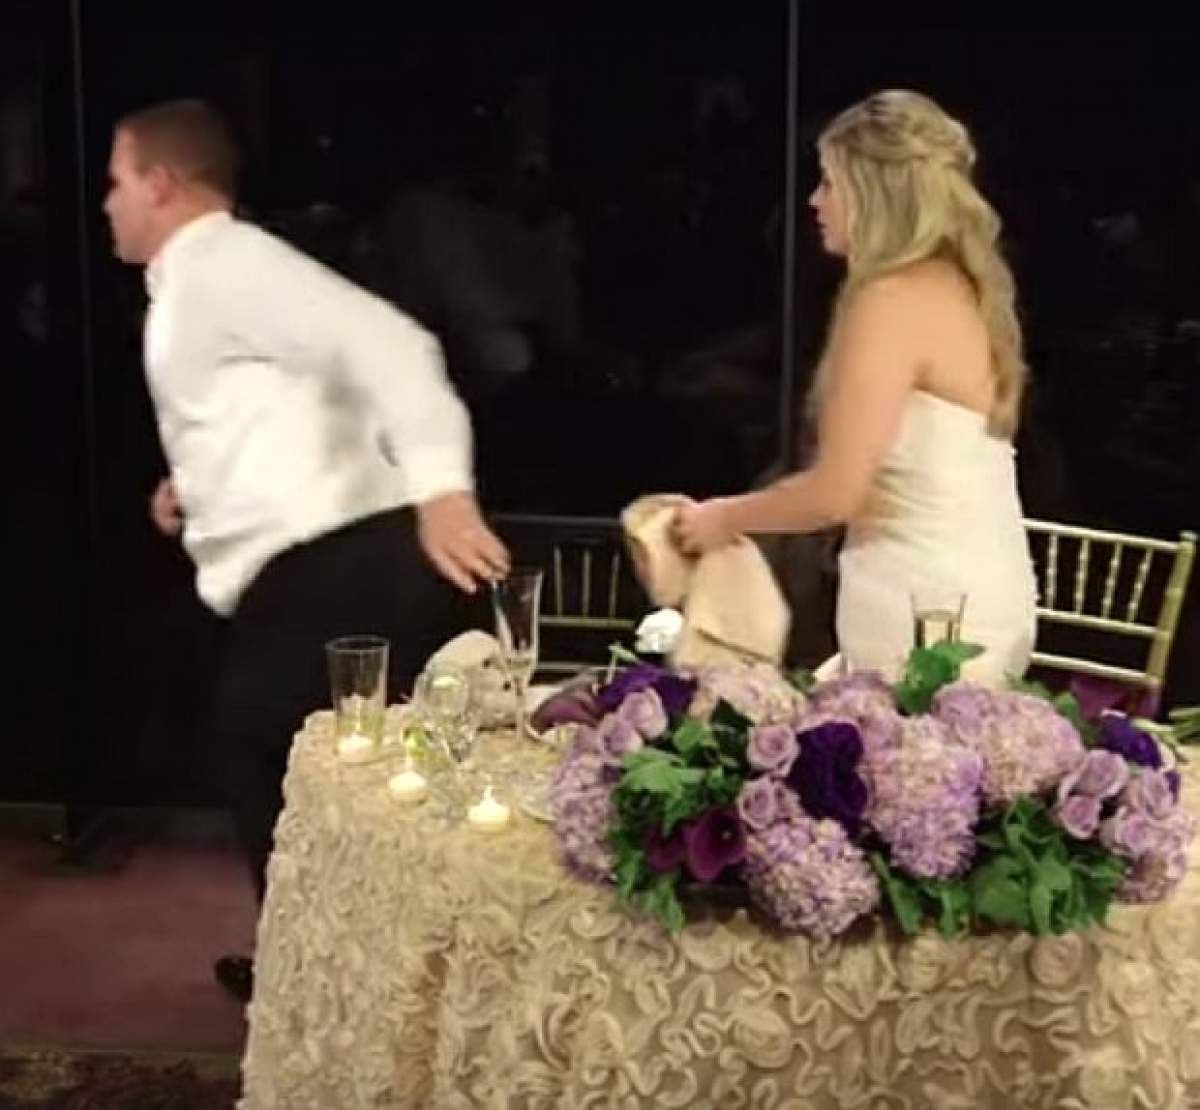 VIDEO / INCREDIBIL! Mirele nu s-a gândit niciodată că se poate întâmpla aşa ceva la propria lui nuntă. A devenit erou imediat